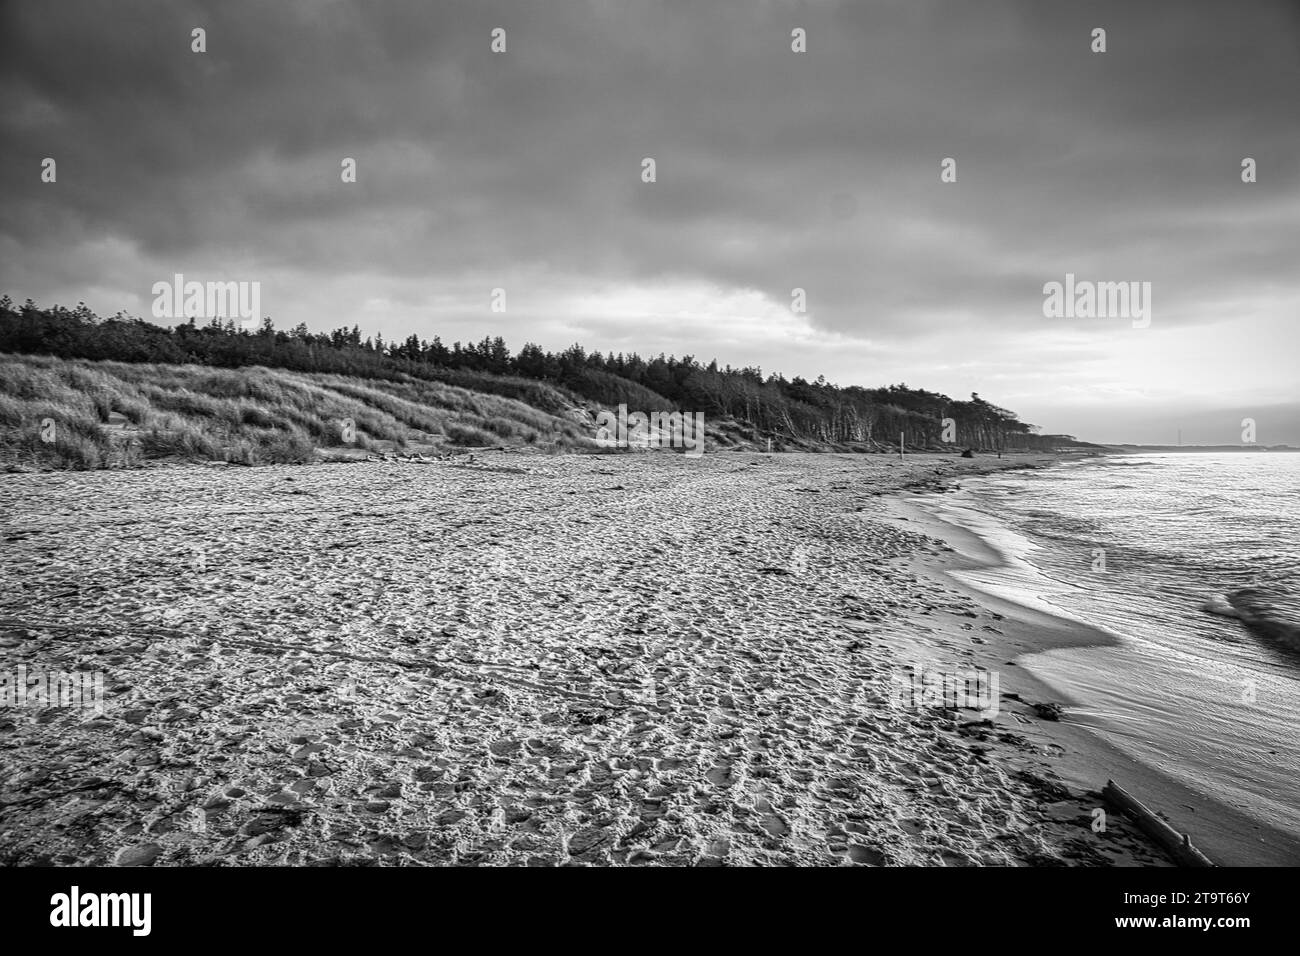 Coucher de soleil sur la plage ouest sur la mer Baltique en noir et blanc. Vagues, plage, ciel nuageux et derniers rayons de soleil sur la côte. Photo paysage Banque D'Images